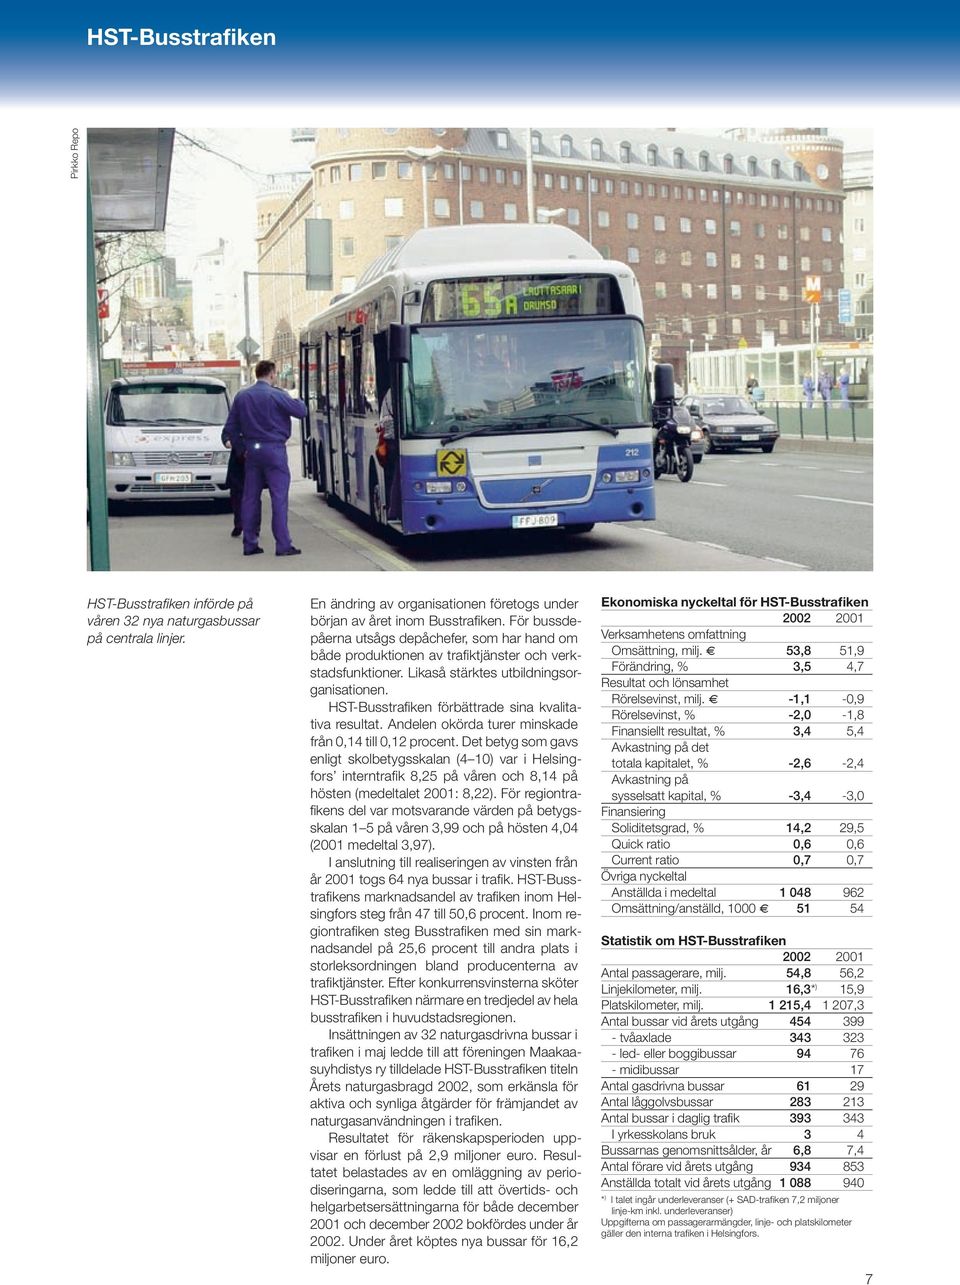 HST-Busstrafiken förbättrade sina kvalitativa resultat. Andelen okörda turer minskade från 0,14 till 0,12 procent.